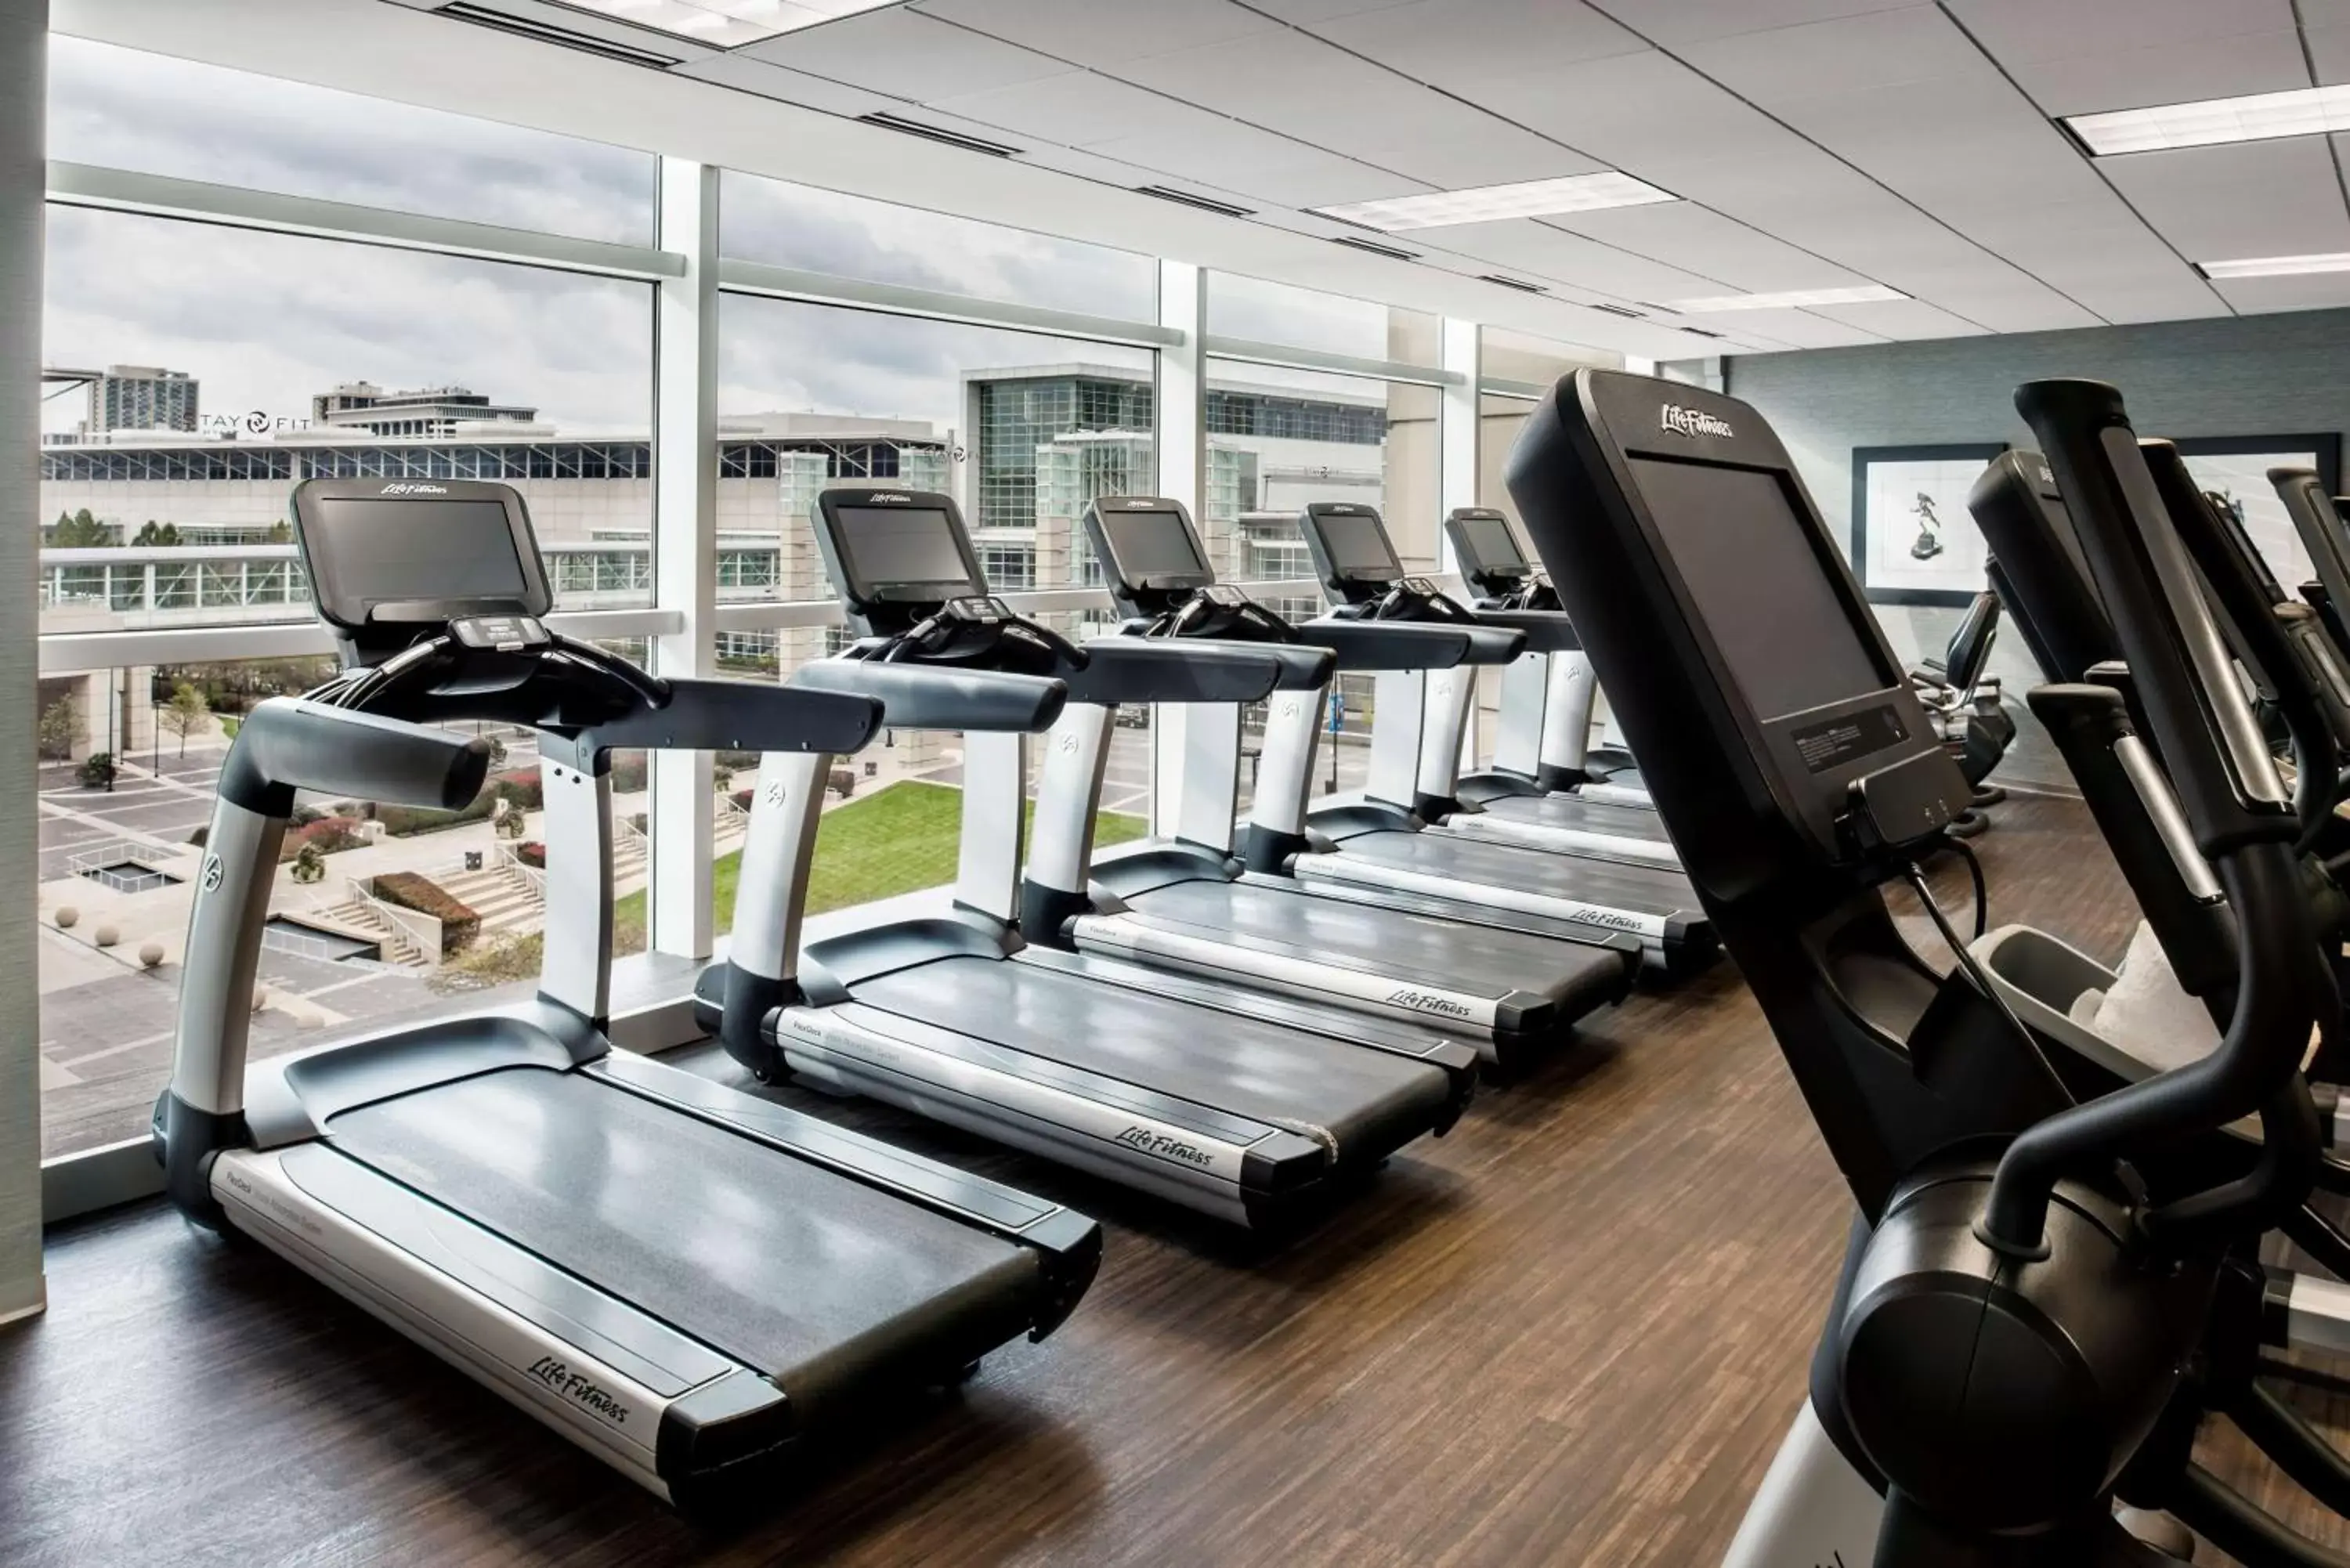 Fitness centre/facilities, Fitness Center/Facilities in Hyatt Regency McCormick Place